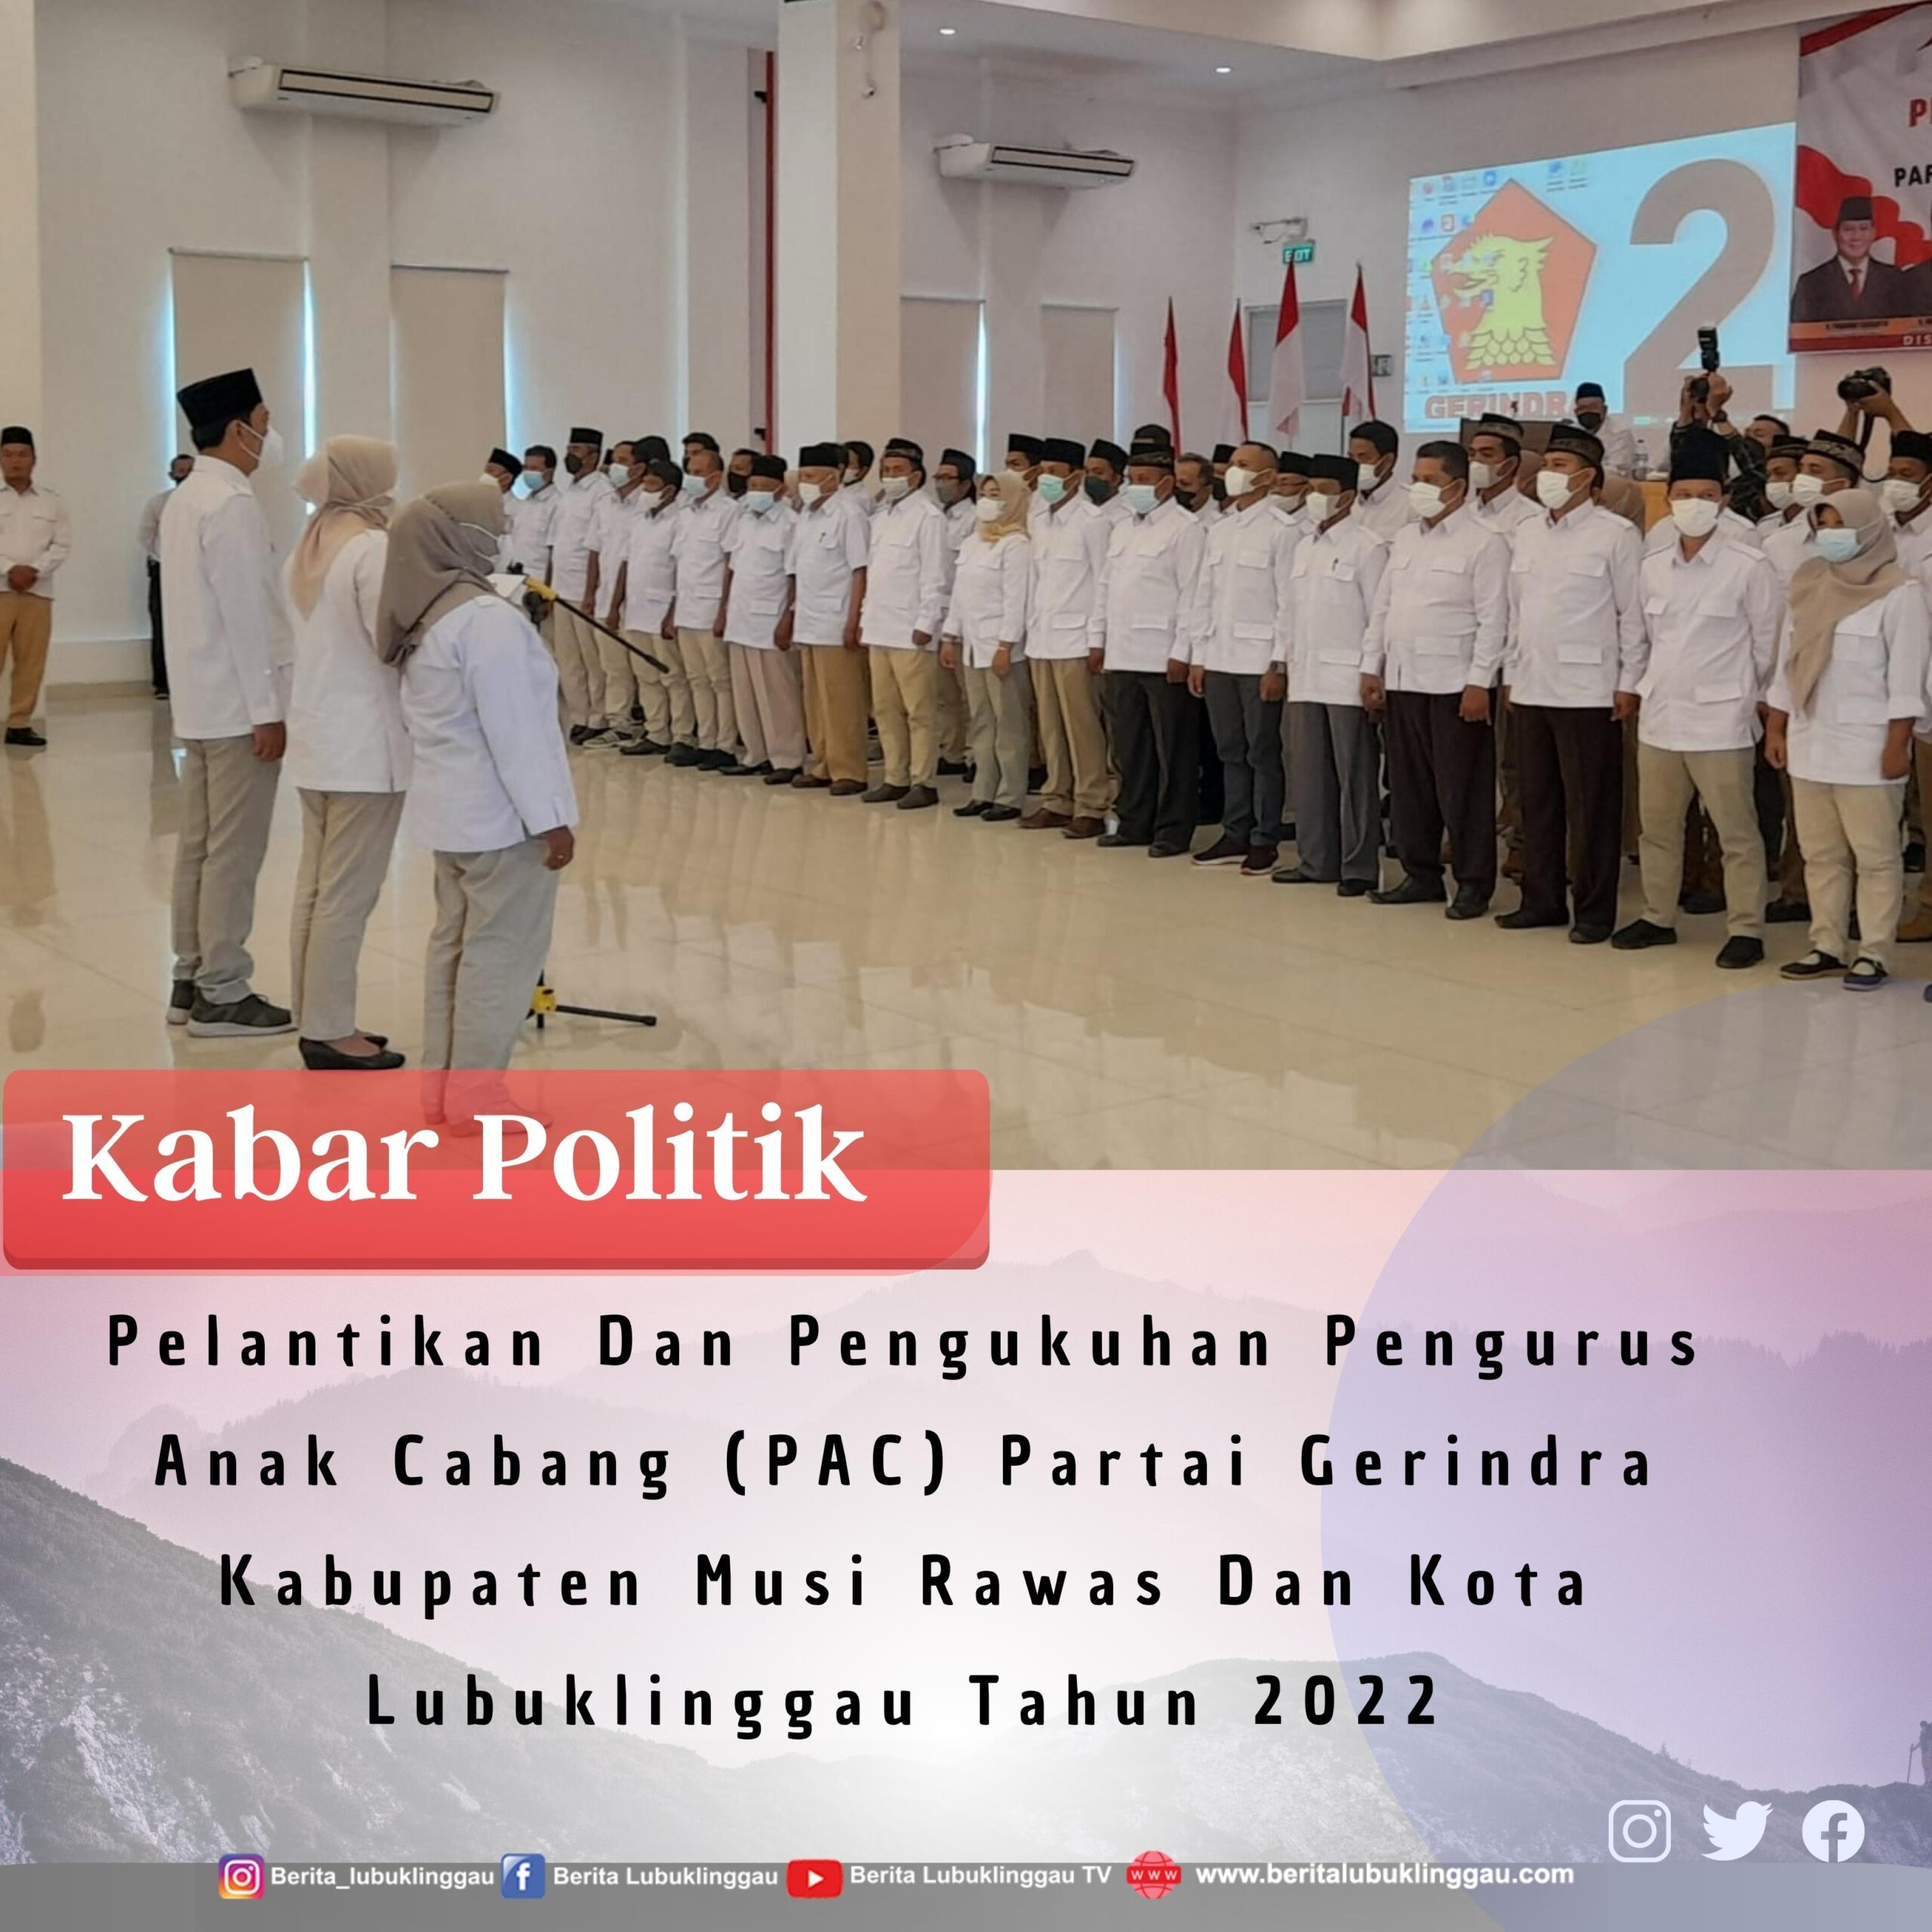 Pelantikan Dan Pengukuhan Pengurus Anak Cabang (PAC) Partai Gerindra Kabupaten Mura & Lubuklinggau 2022